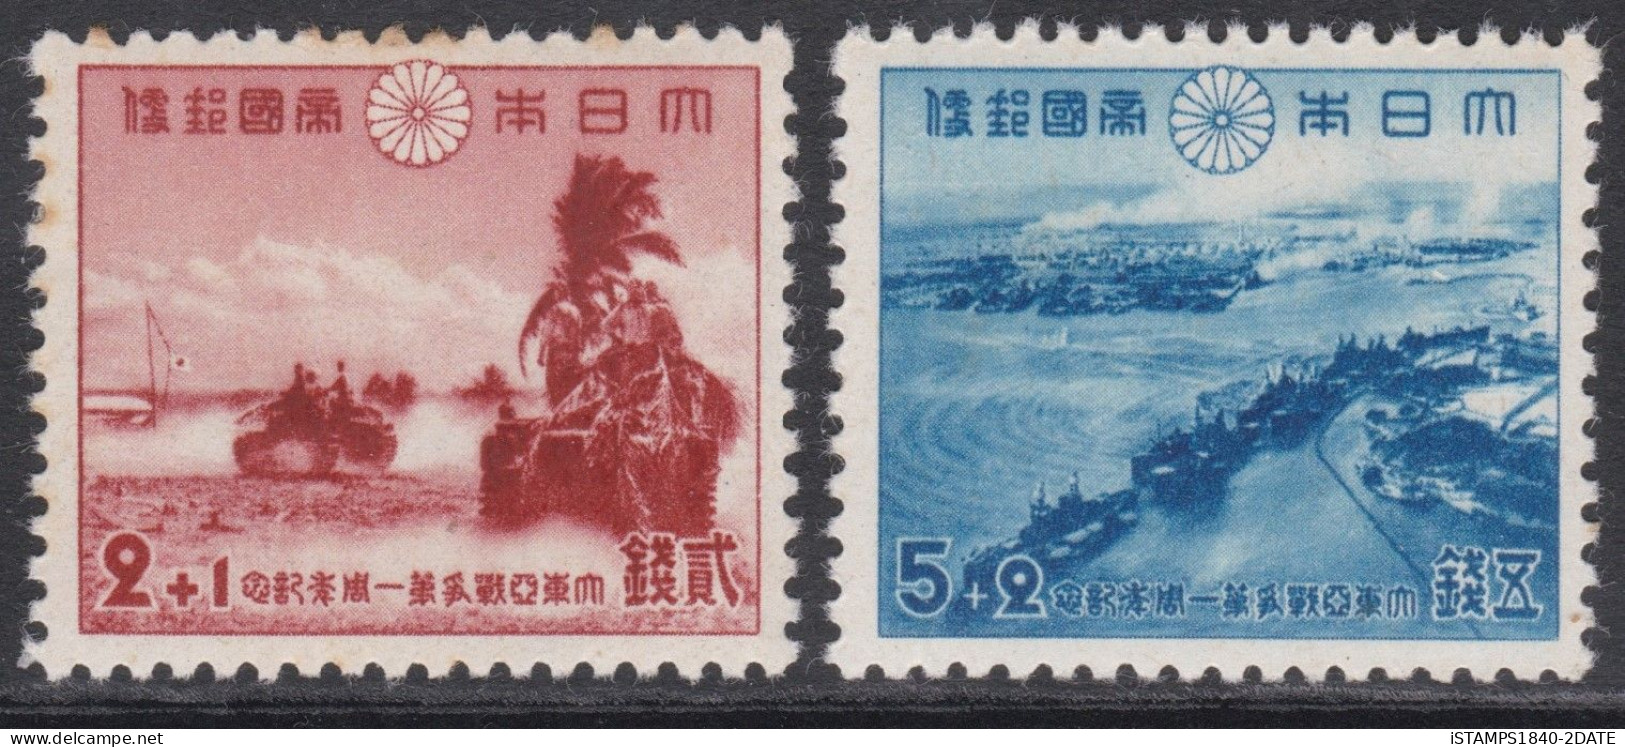 00437/ Japan 1942 Sg409/10 1st Anniversary Of Declaration Of War MNH - Ungebraucht